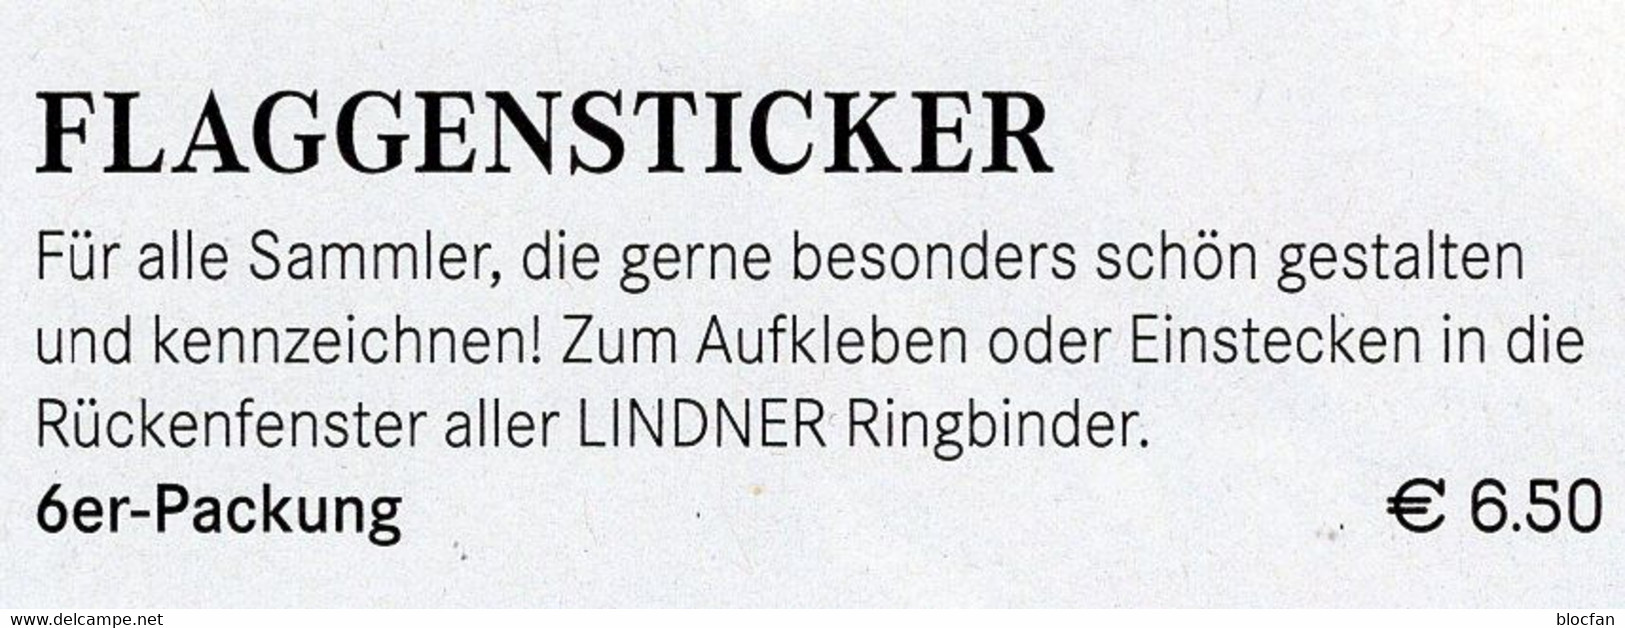 6 Flaggen-Sticker Schweiz In Farbe Pack 7€ Zur Kennzeichnung Von Alben Und Sammlung Firma LINDNER #646 Flag Of Helvetia - Álbumes, Forros Y Hojas